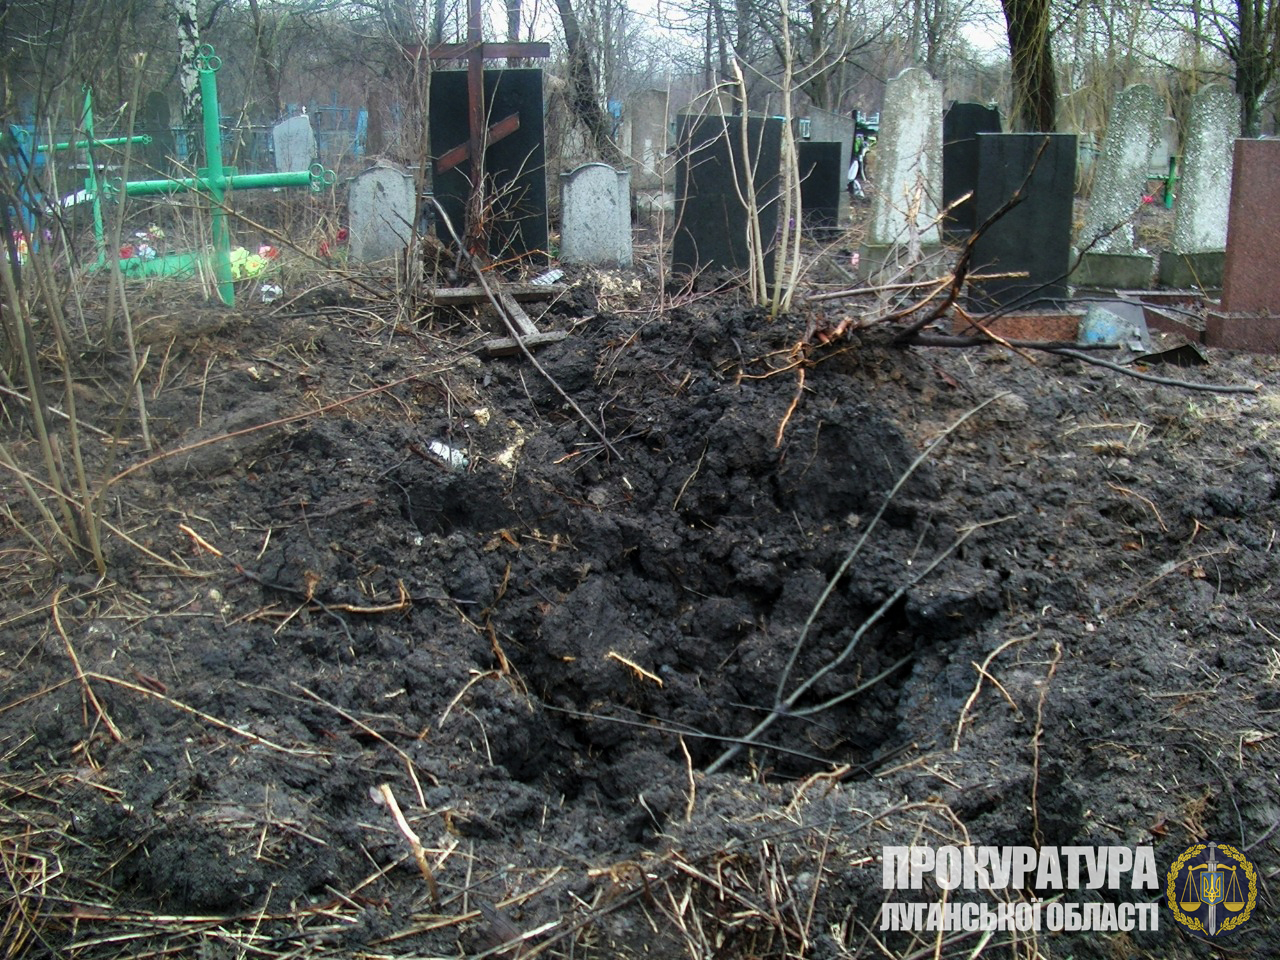 Наслідки обстрілу кладовища у Попасній. Фото: прокуратура Луганської області